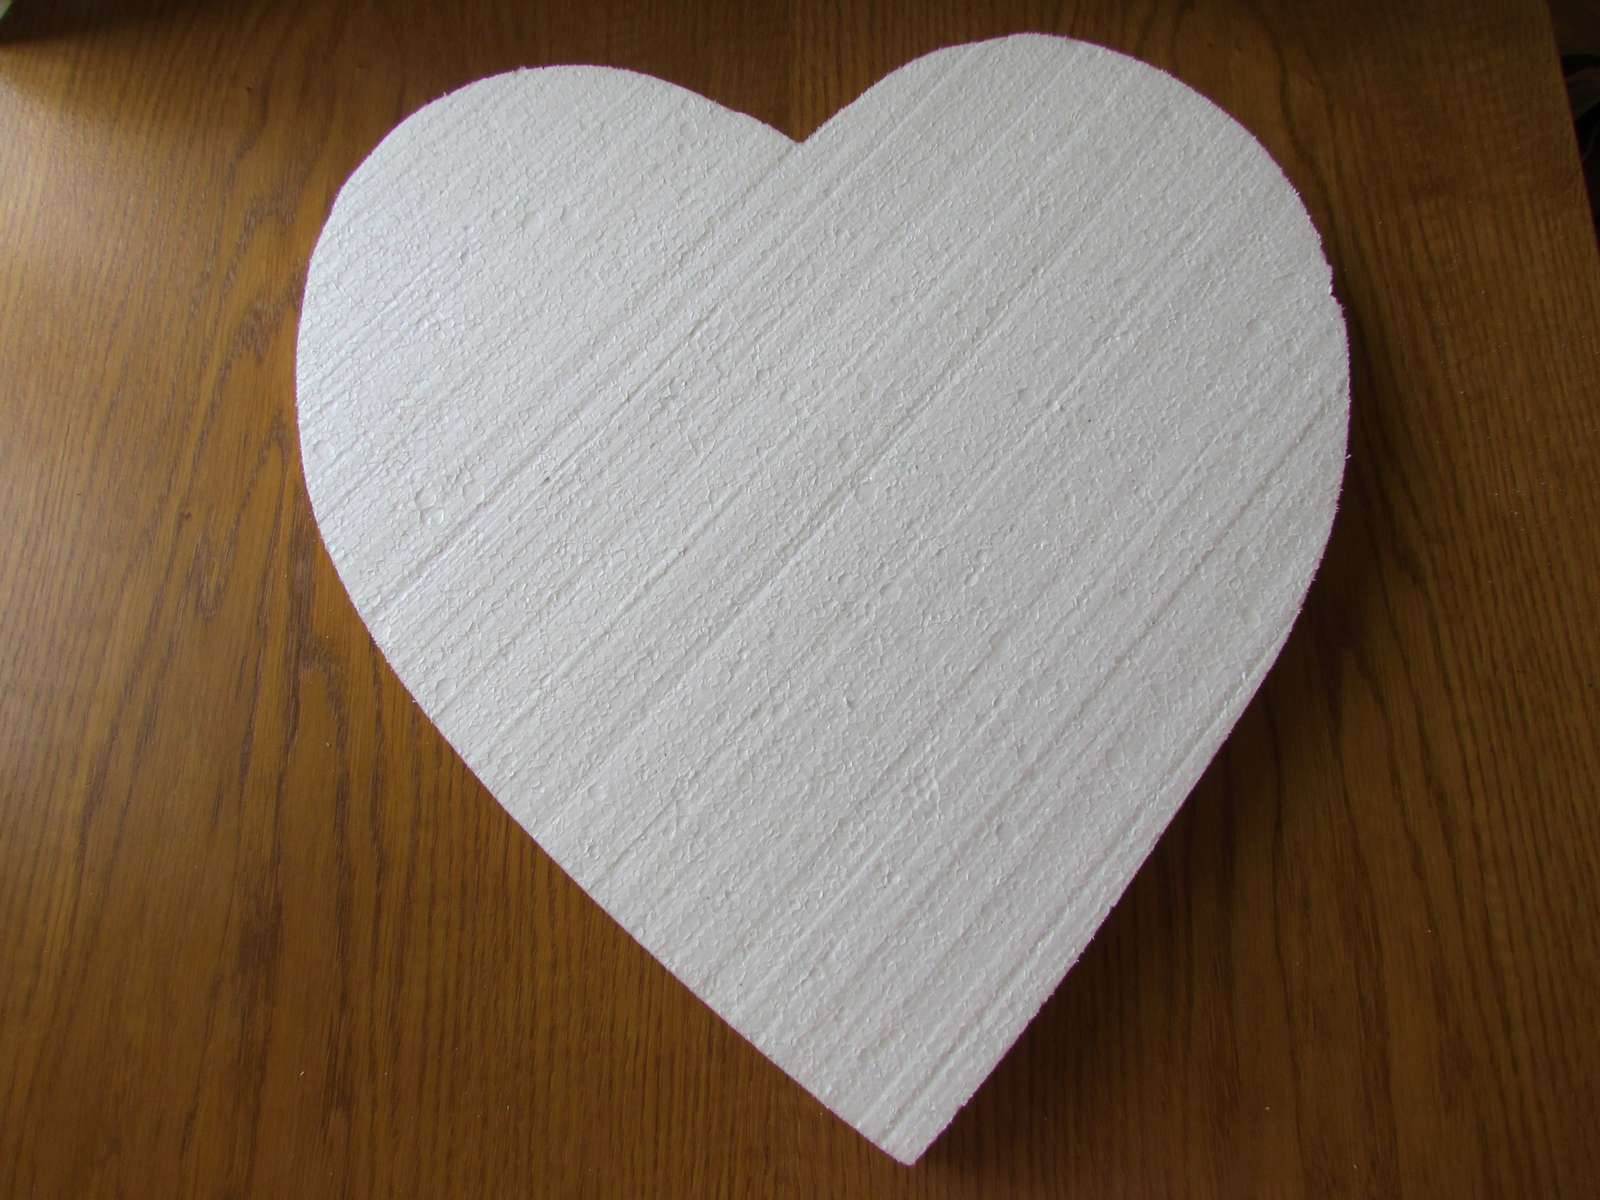 Polystyrenové srdce cca 40 cm - Obrázek č. 1